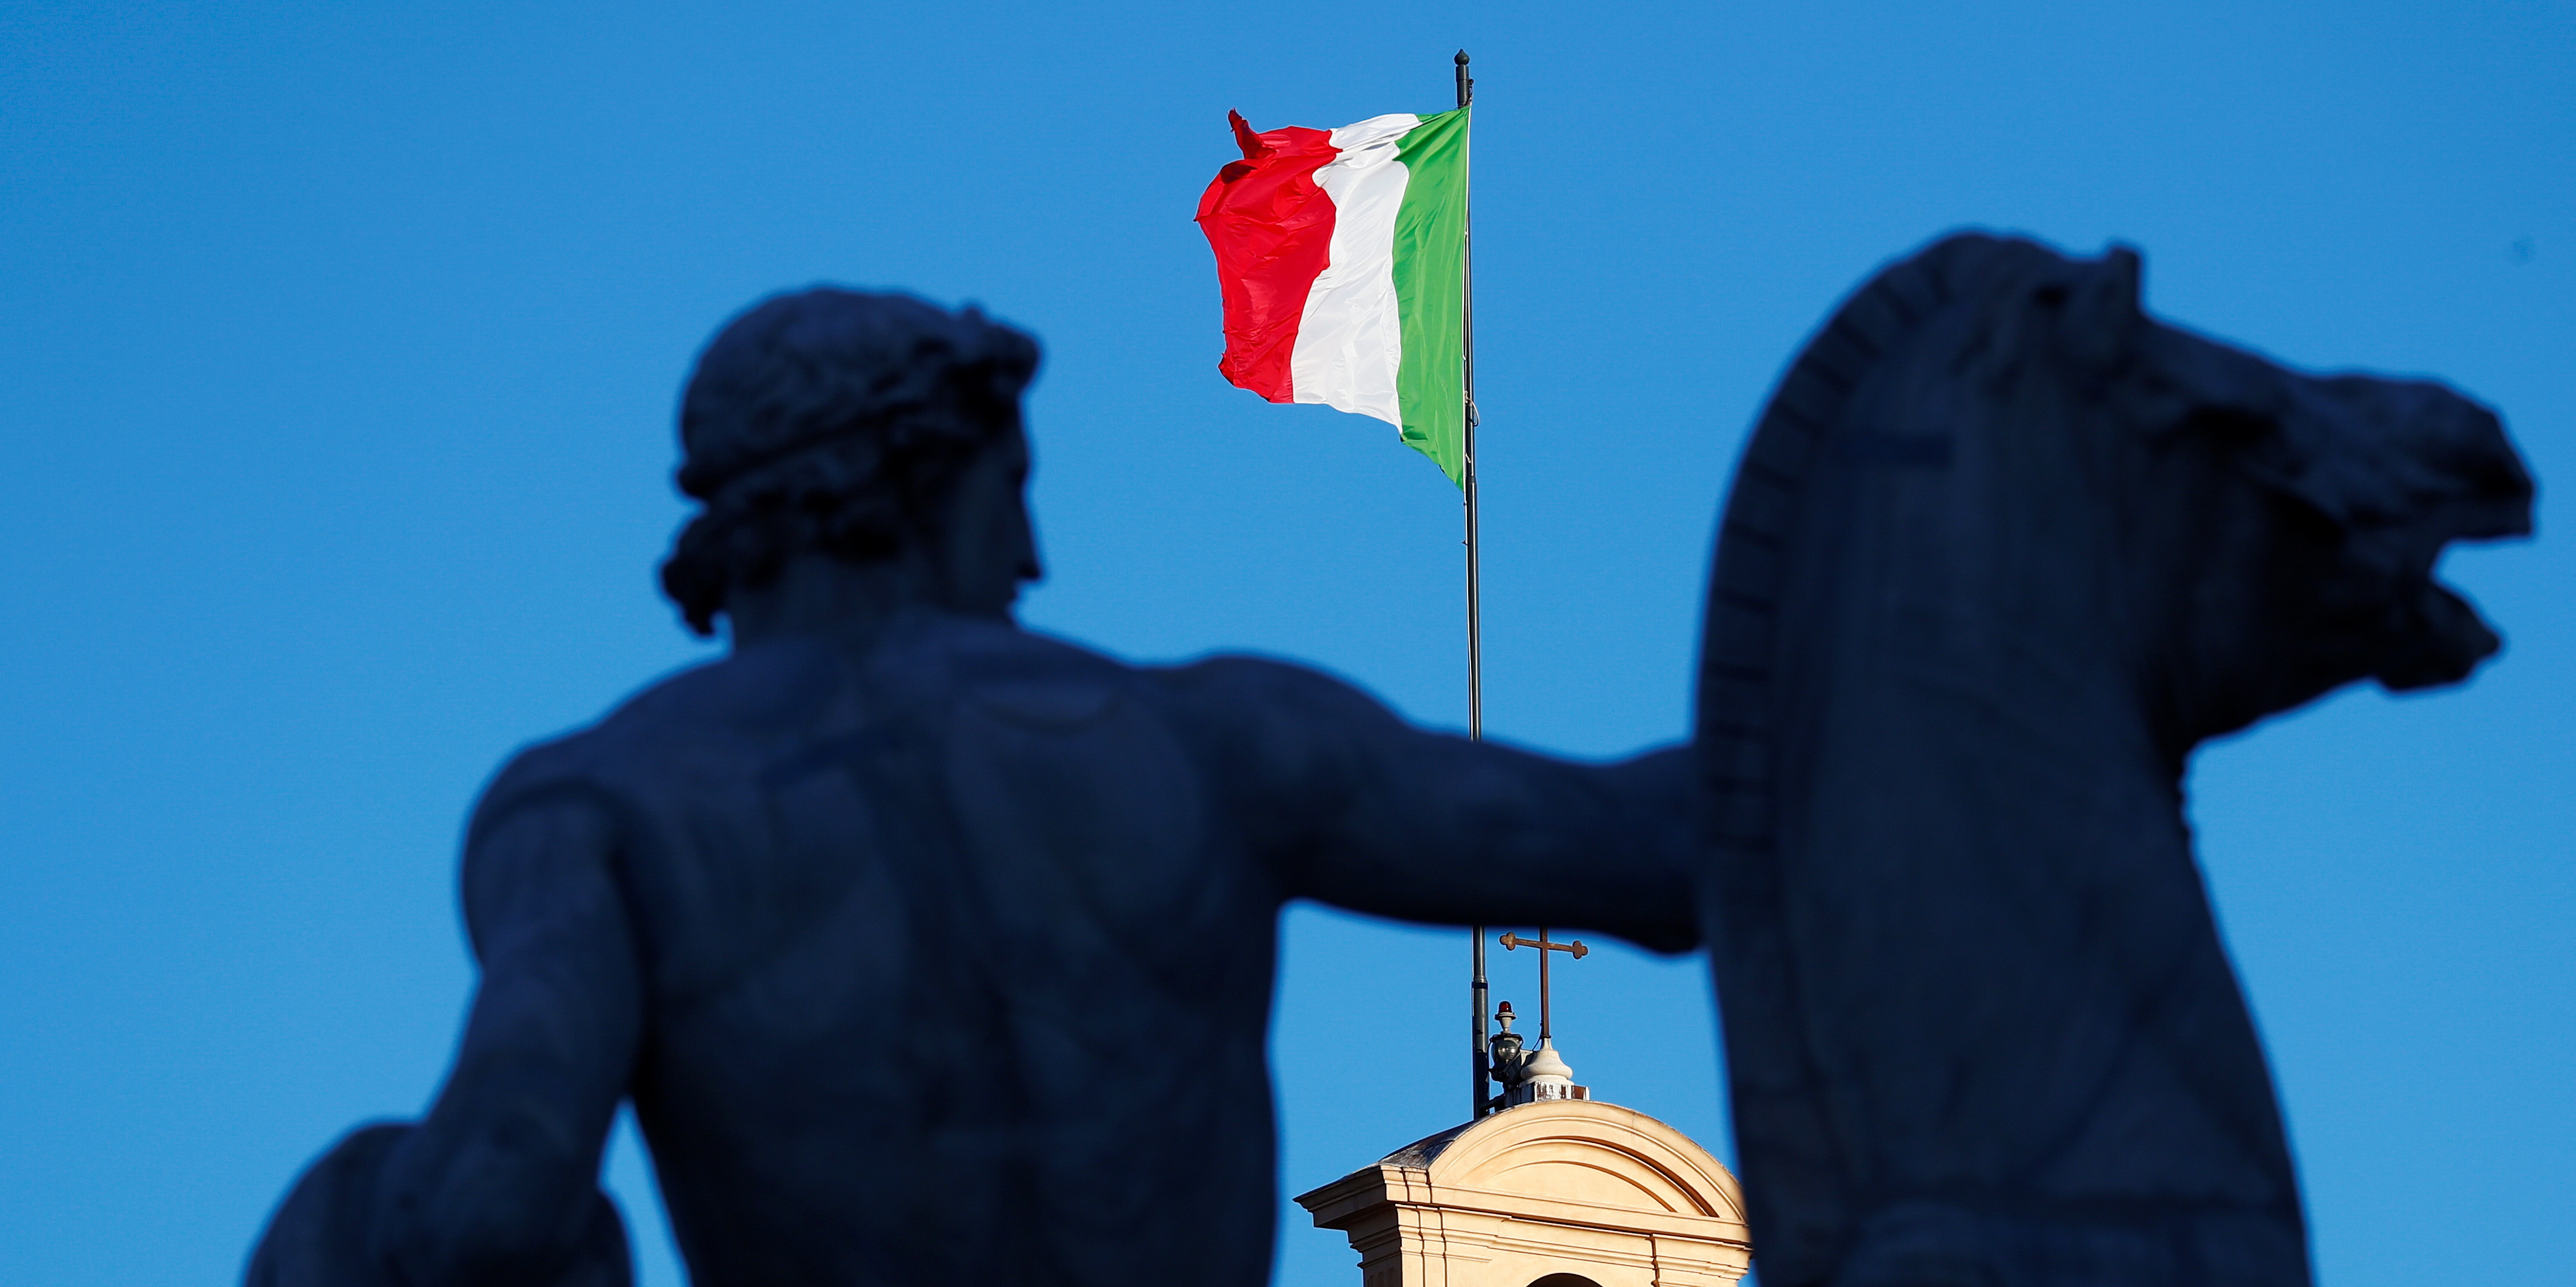 Italie : l'inflation remonte à 1,2% en mars, sur fond de craintes sur les prix de l'énergie